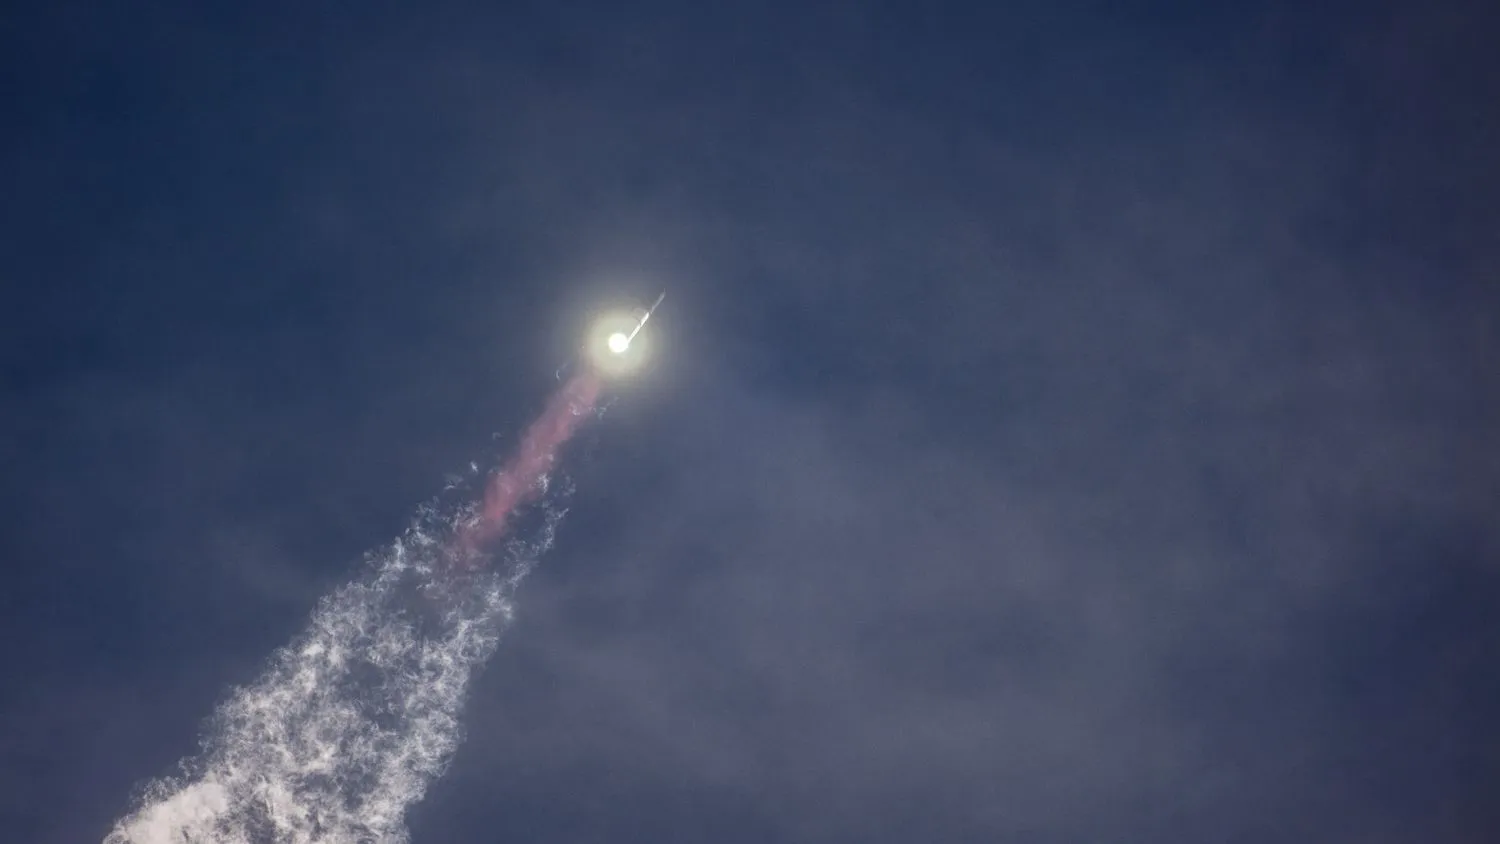 eine große silberne Rakete fliegt durch einen blauen Himmel über einer Flammensäule